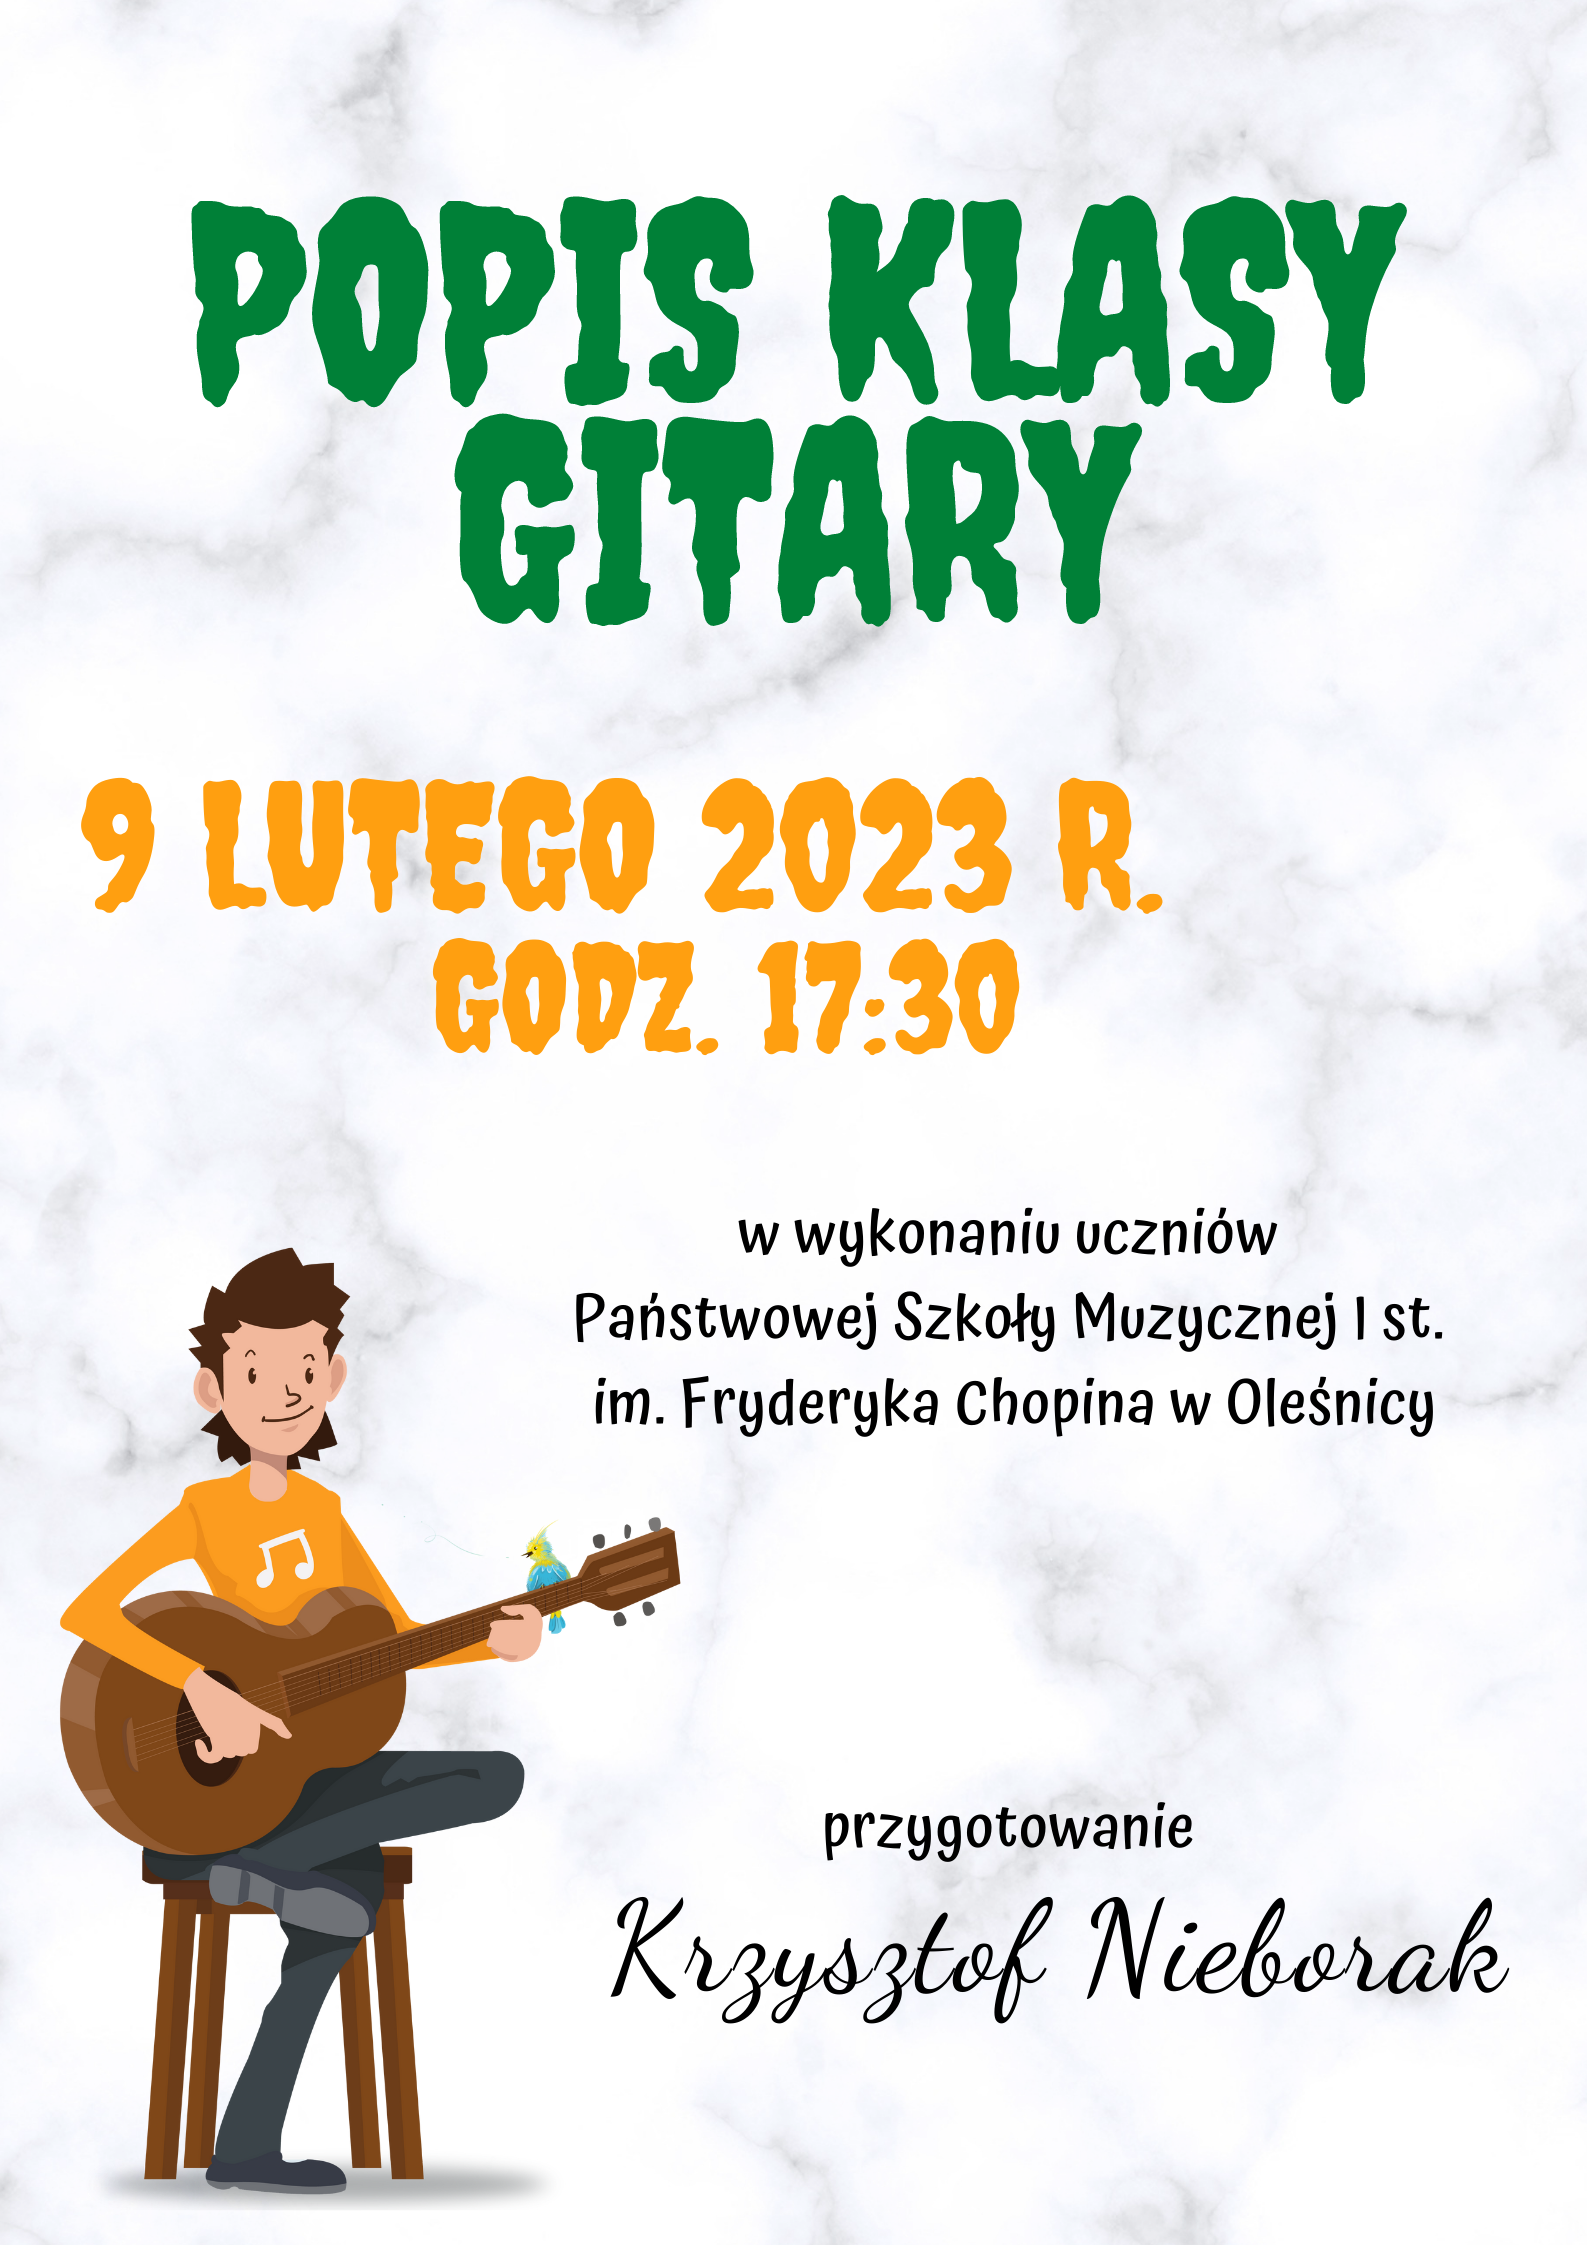 Plakat przedstawia informację dotyczącą popisu klasy gitary p. Krzysztofa Nieboraka w dniu 9.02.2023 r. Tło marmurkowe, na dole strony znajduje się grafika chłopca siedzącego na stołku z gitarą.